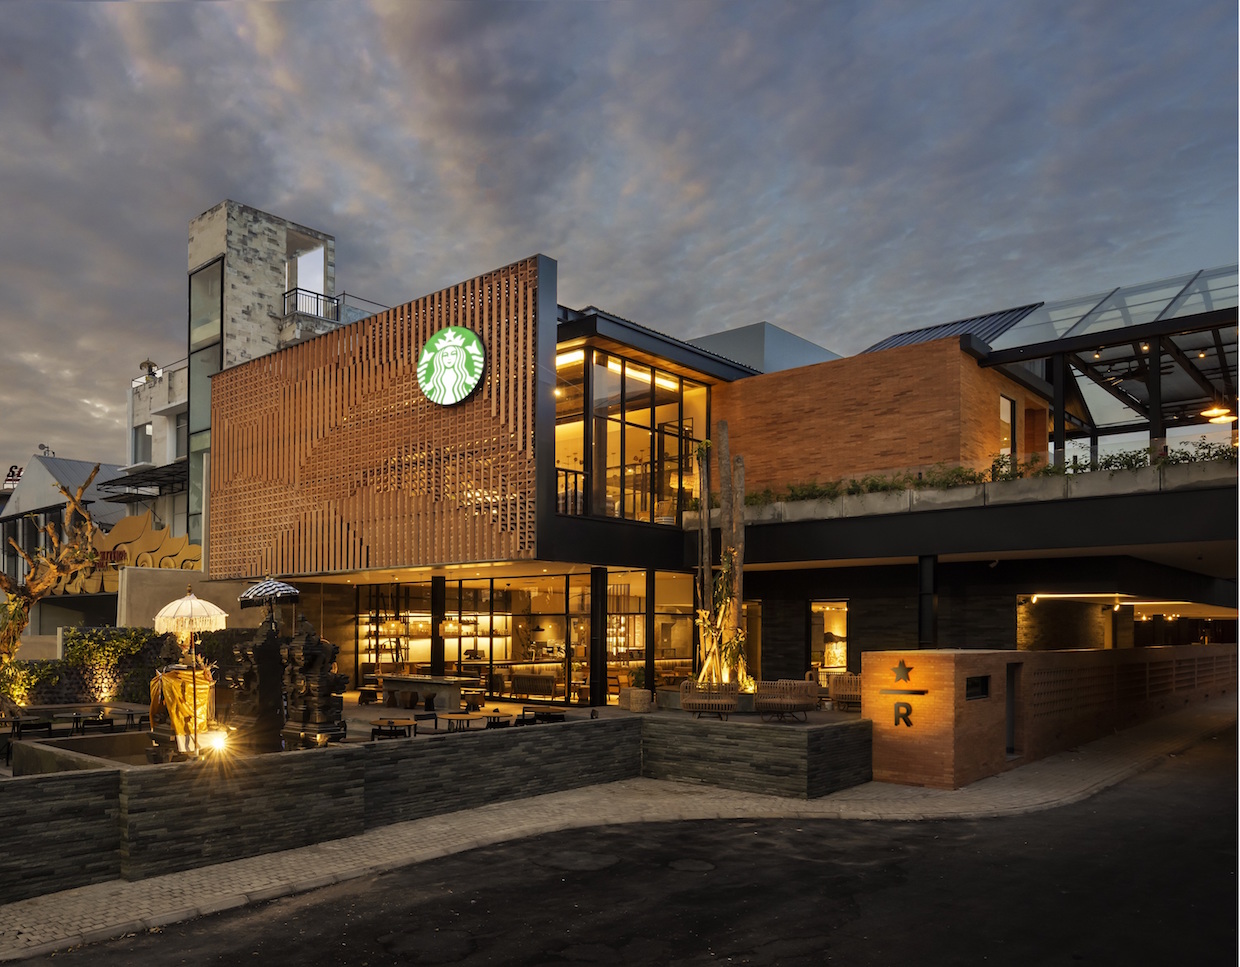 星巴克在印度尼西亚开创新门店类型——小型咖啡农场体验店